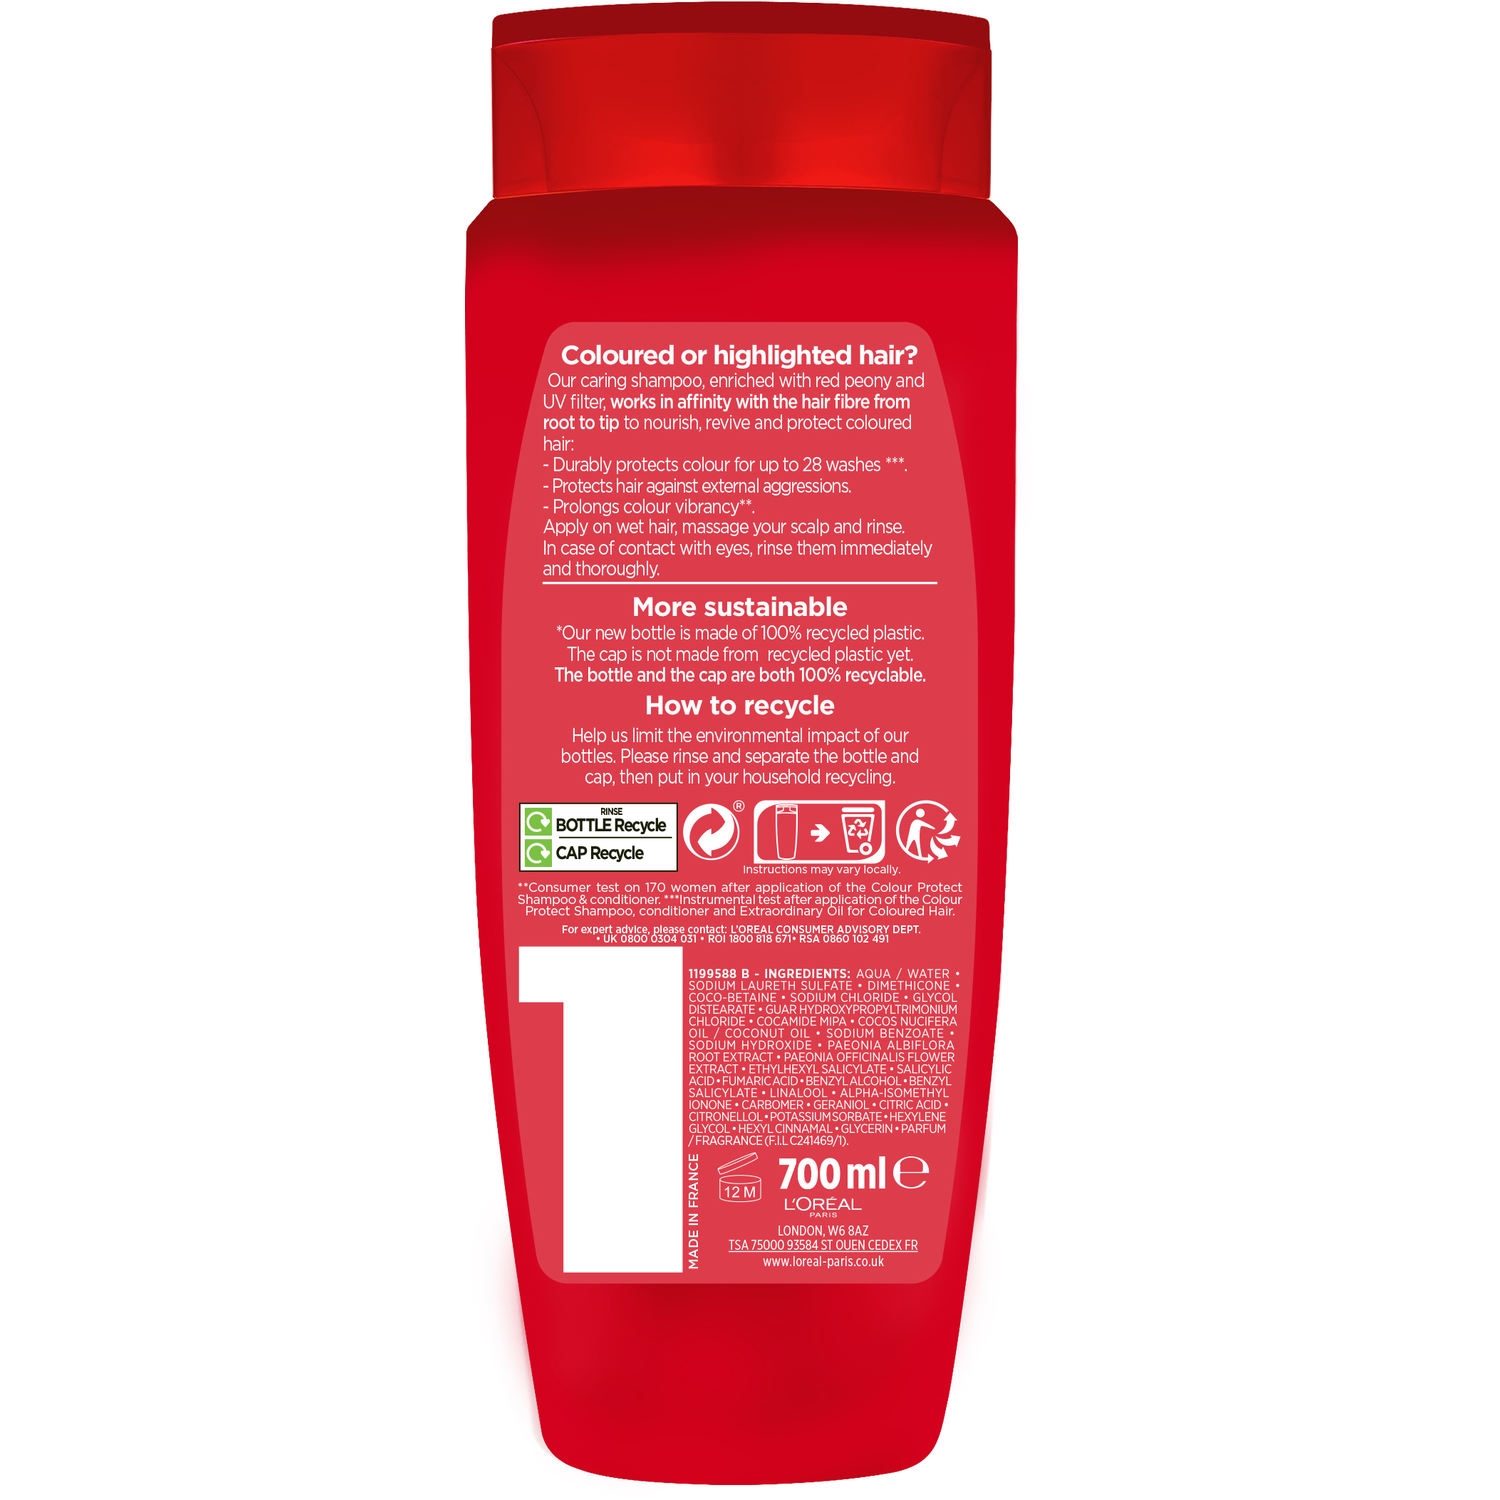 L'Oreal Elvive Colour Protect Shampoo 700ml Image 2